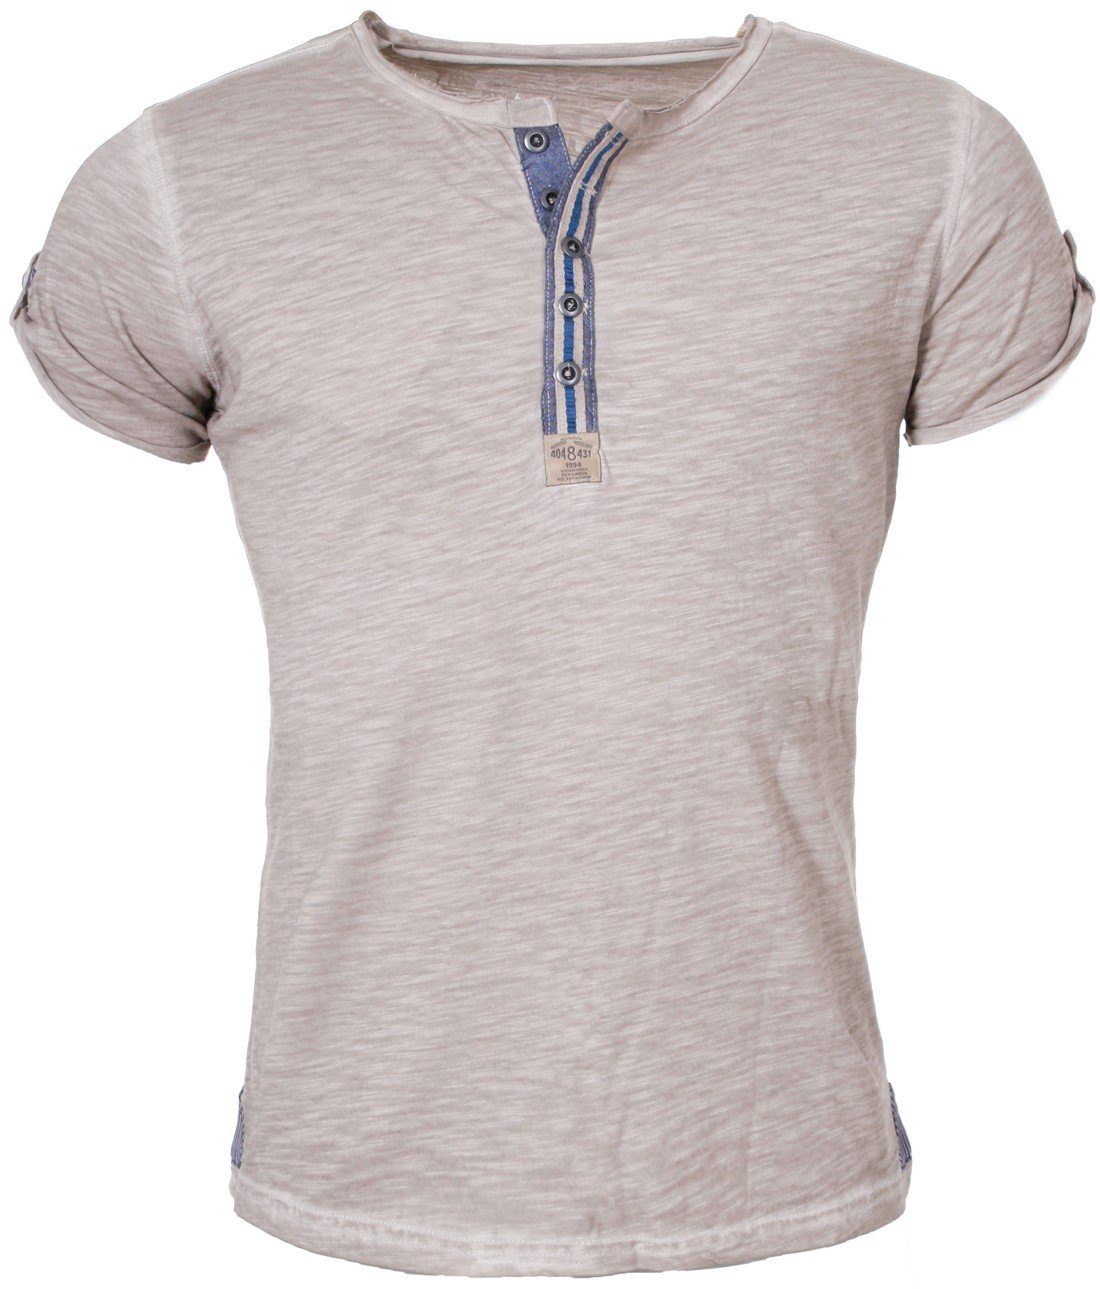 Key Largo T-Shirt für Herren Arena button vintage Look MT00023 mit Knopfleiste unifarben kurzarm slim fit Sand